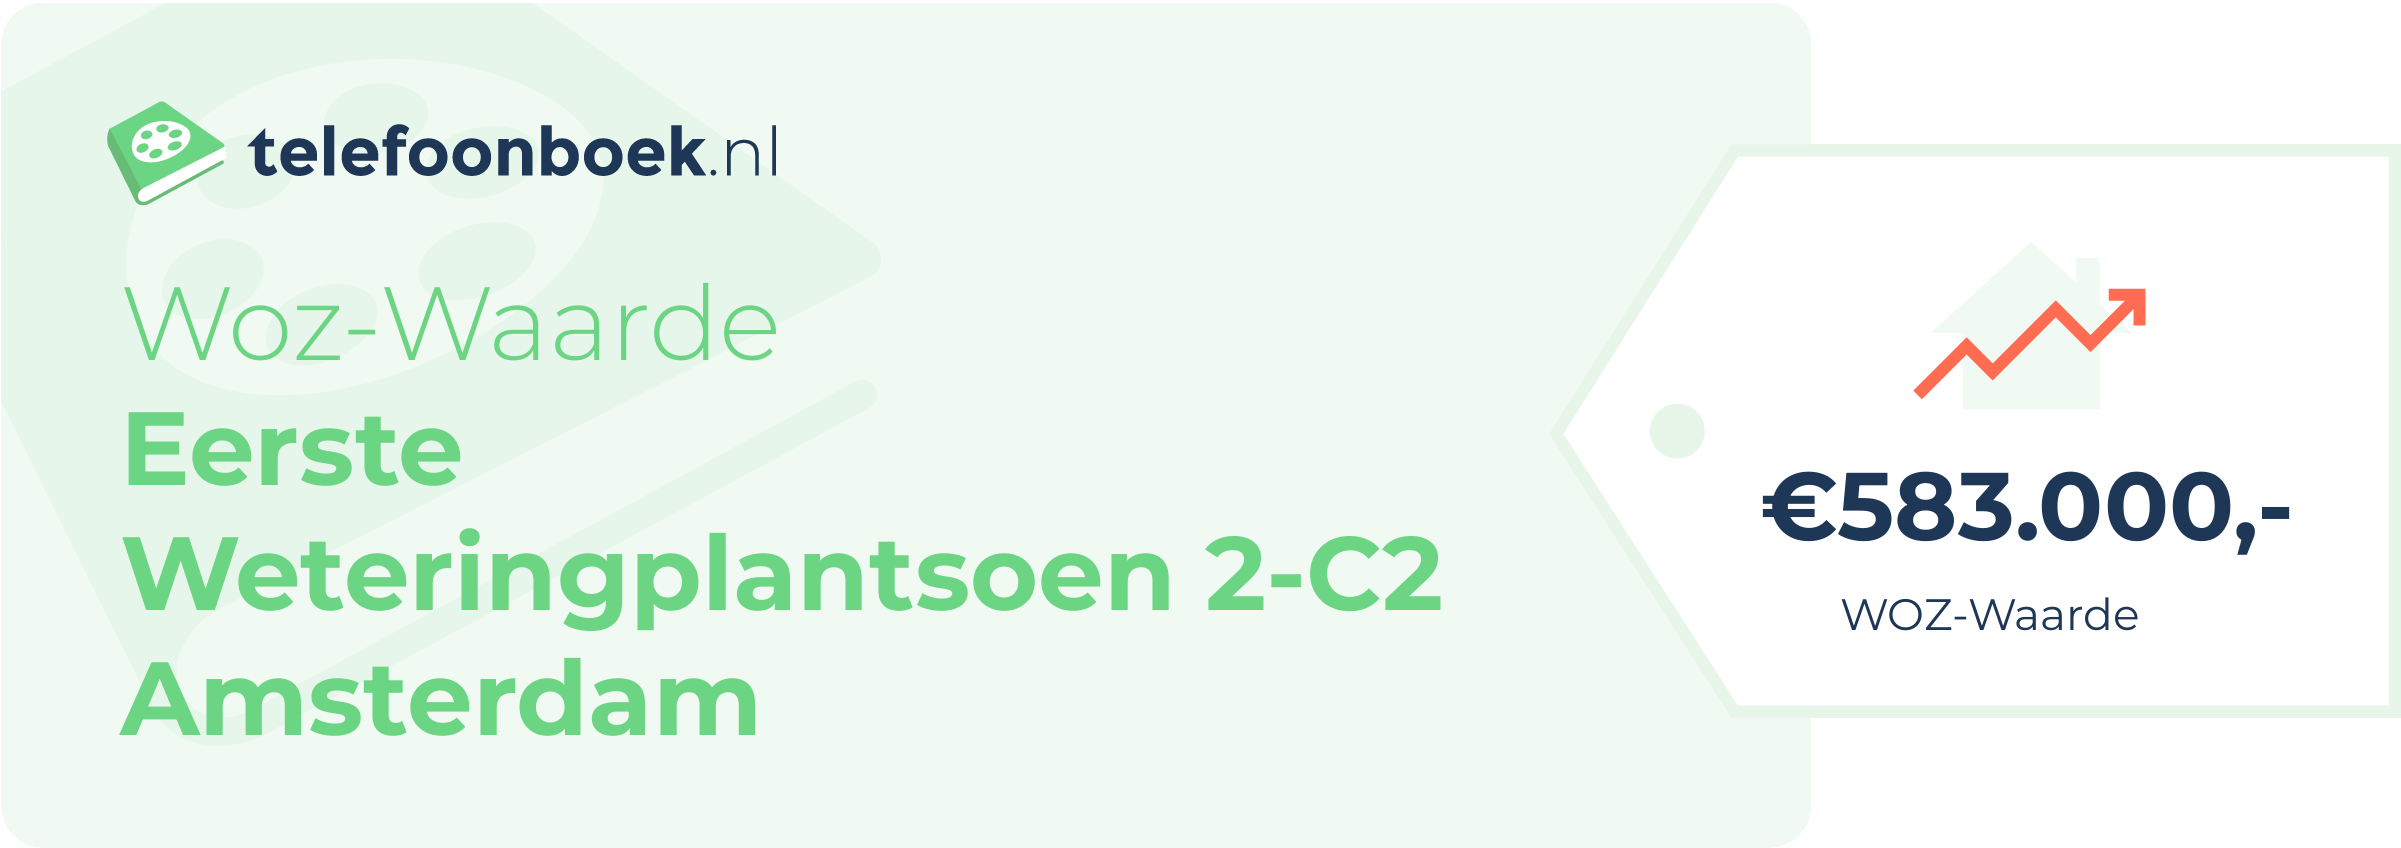 WOZ-waarde Eerste Weteringplantsoen 2-C2 Amsterdam